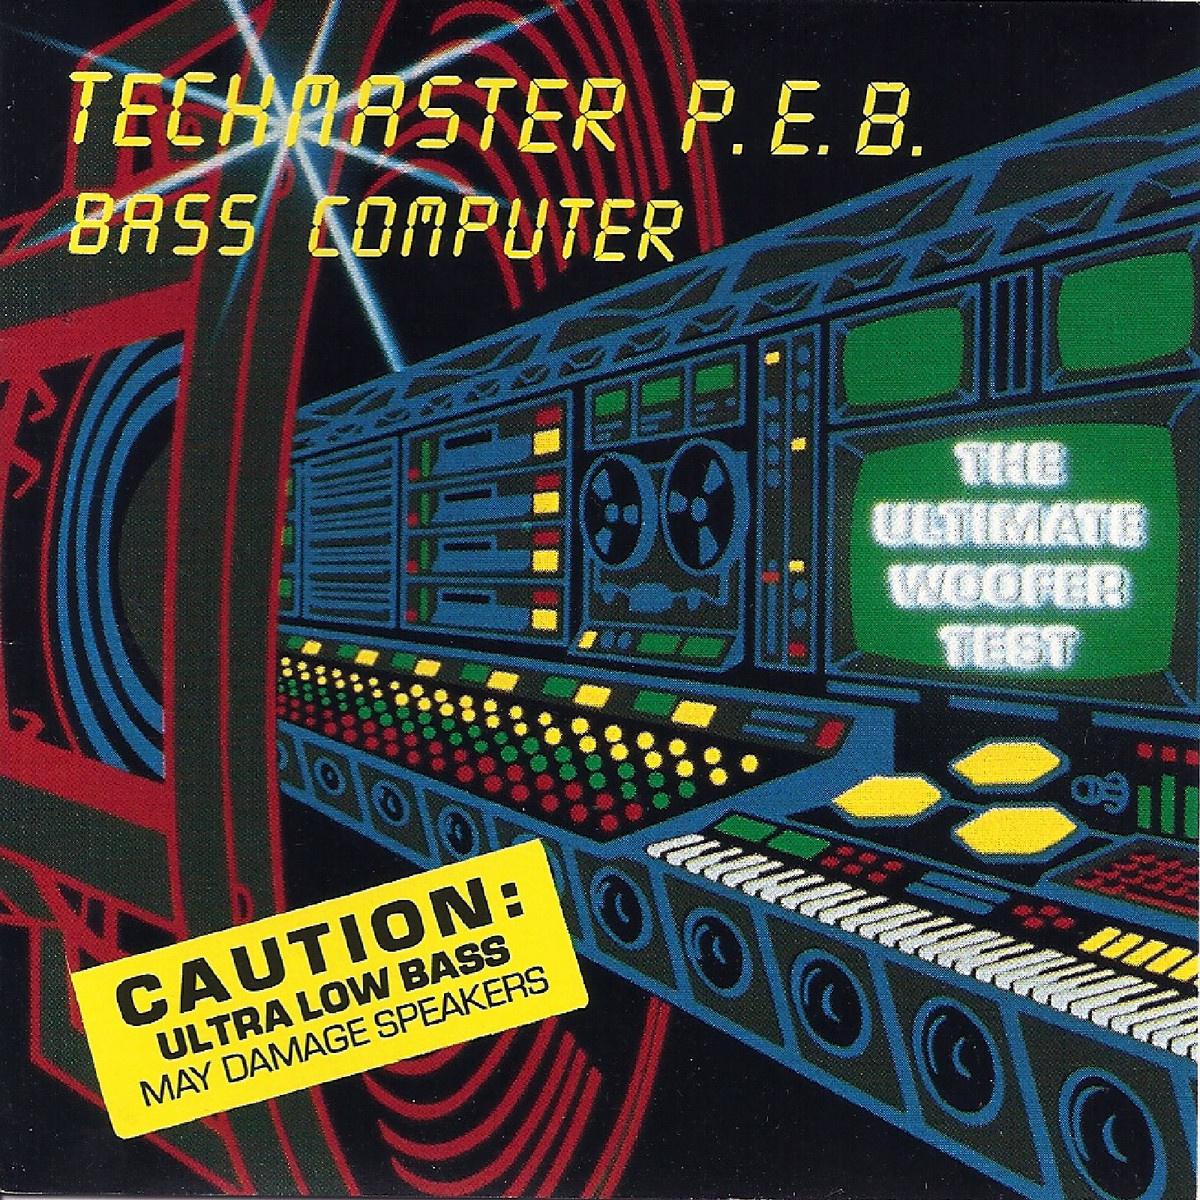 Techmaster P.E.B. - Tech'in Slow n' Low